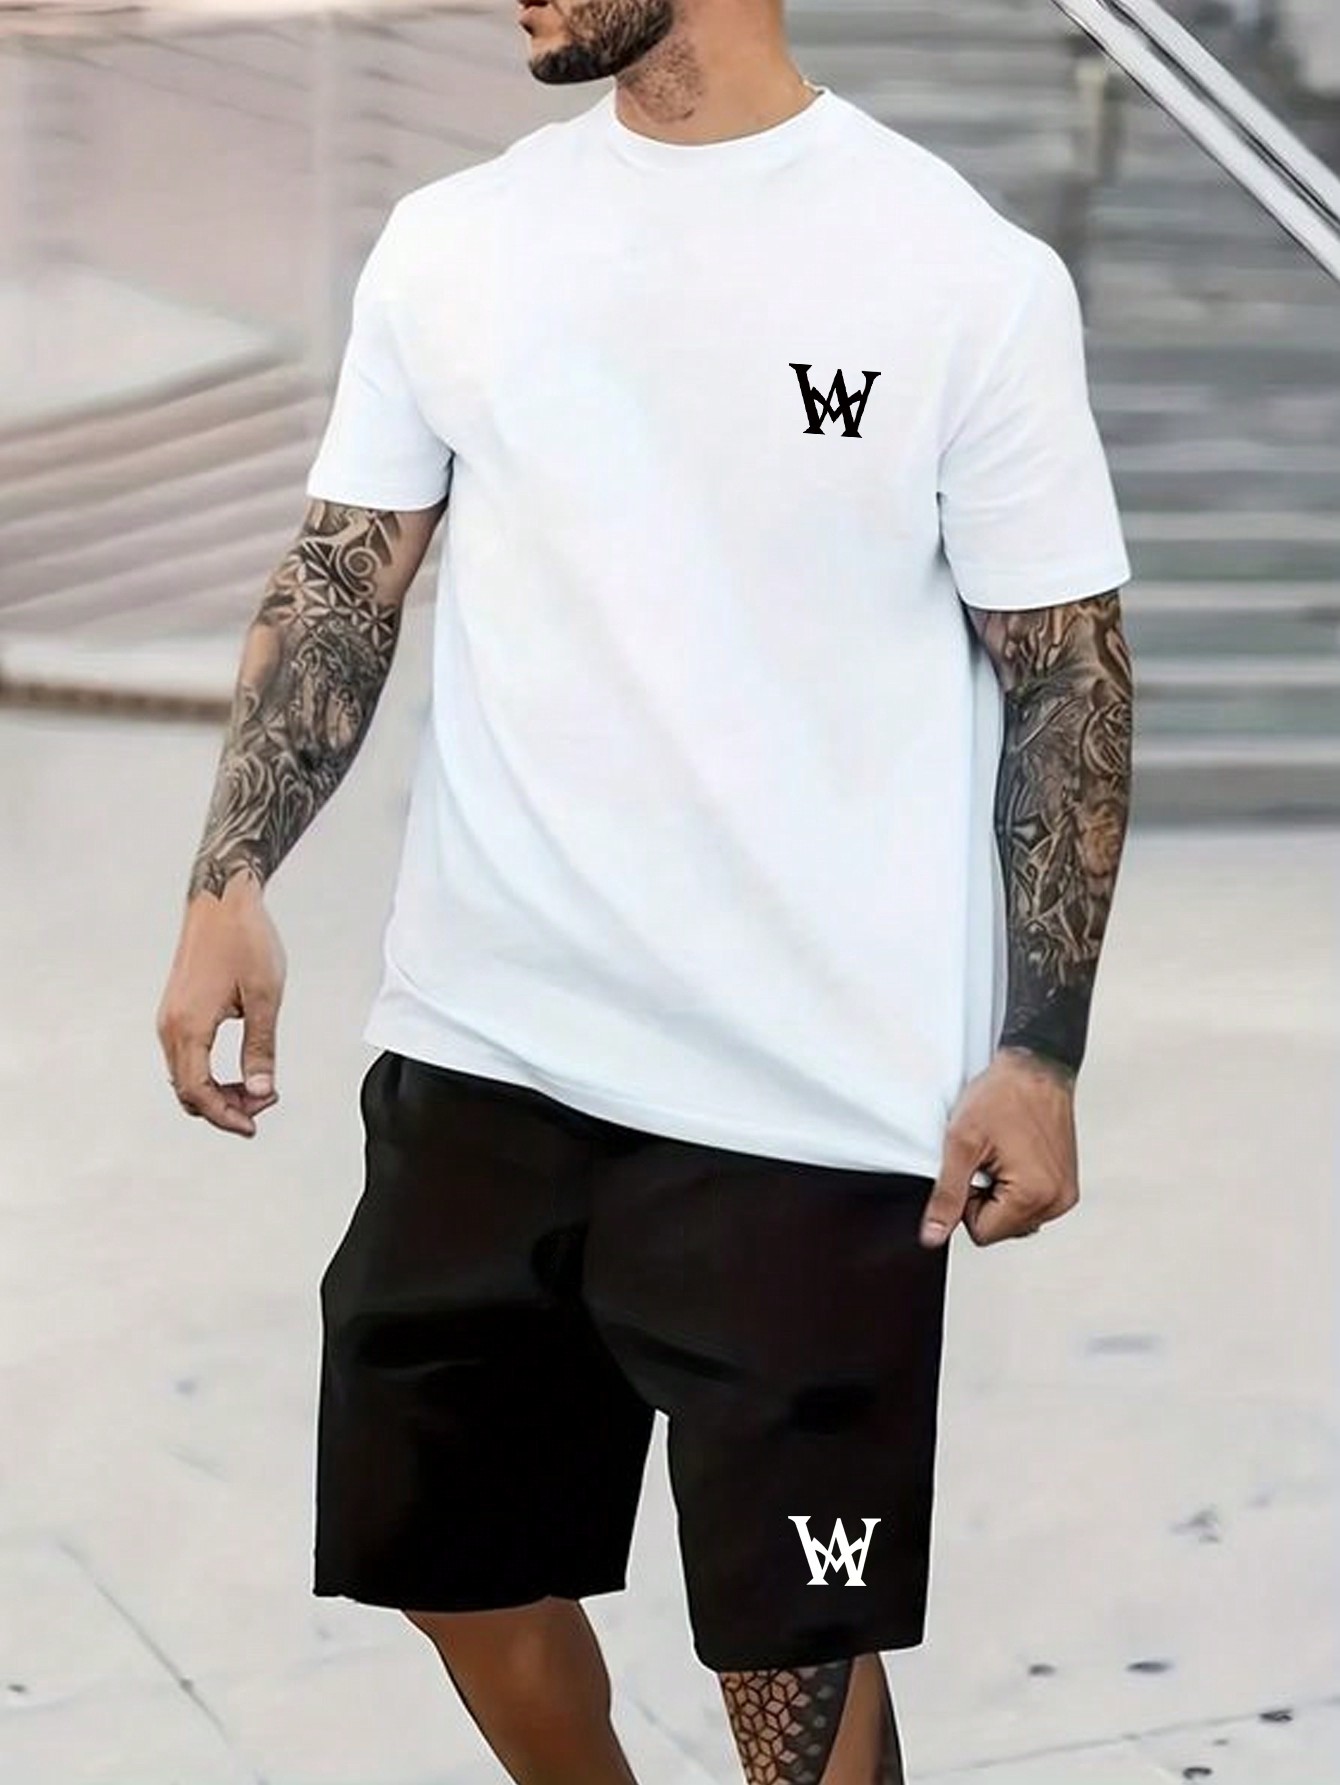 Мужская футболка с короткими рукавами и шорты с буквенным принтом больших размеров Manfinity Homme, черное и белое спортивная одежда для мальчиков костюм с коротким рукавом модная трендовая простая футболка в корейском стиле с буквенным принтом шорты